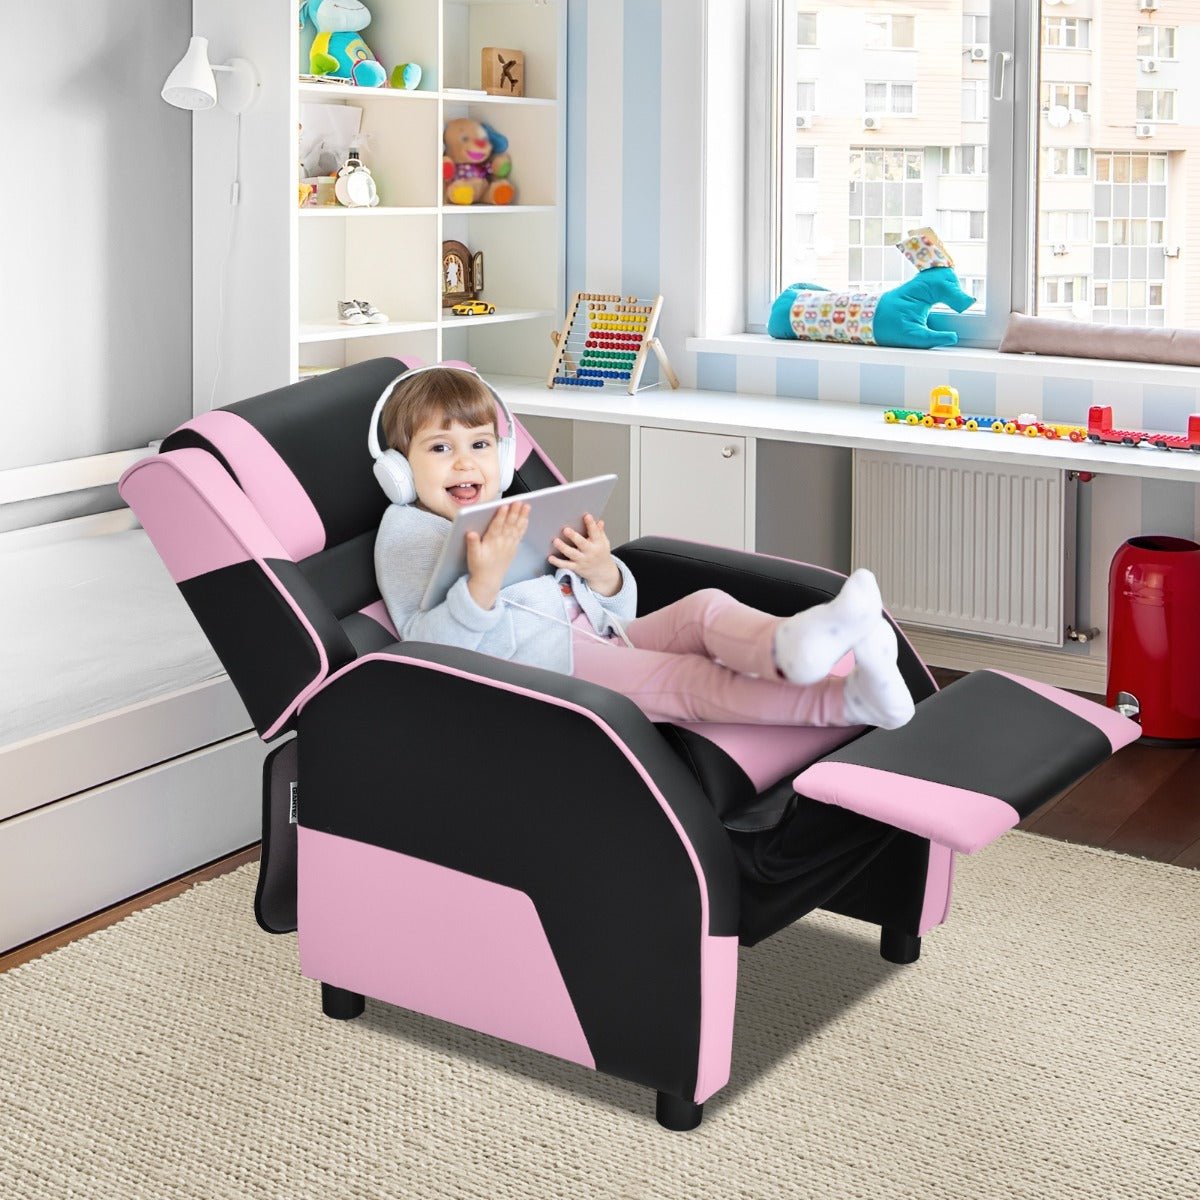 Pink Kids Recliner Chair: Adjustable Backrest & Footrest for Comfort